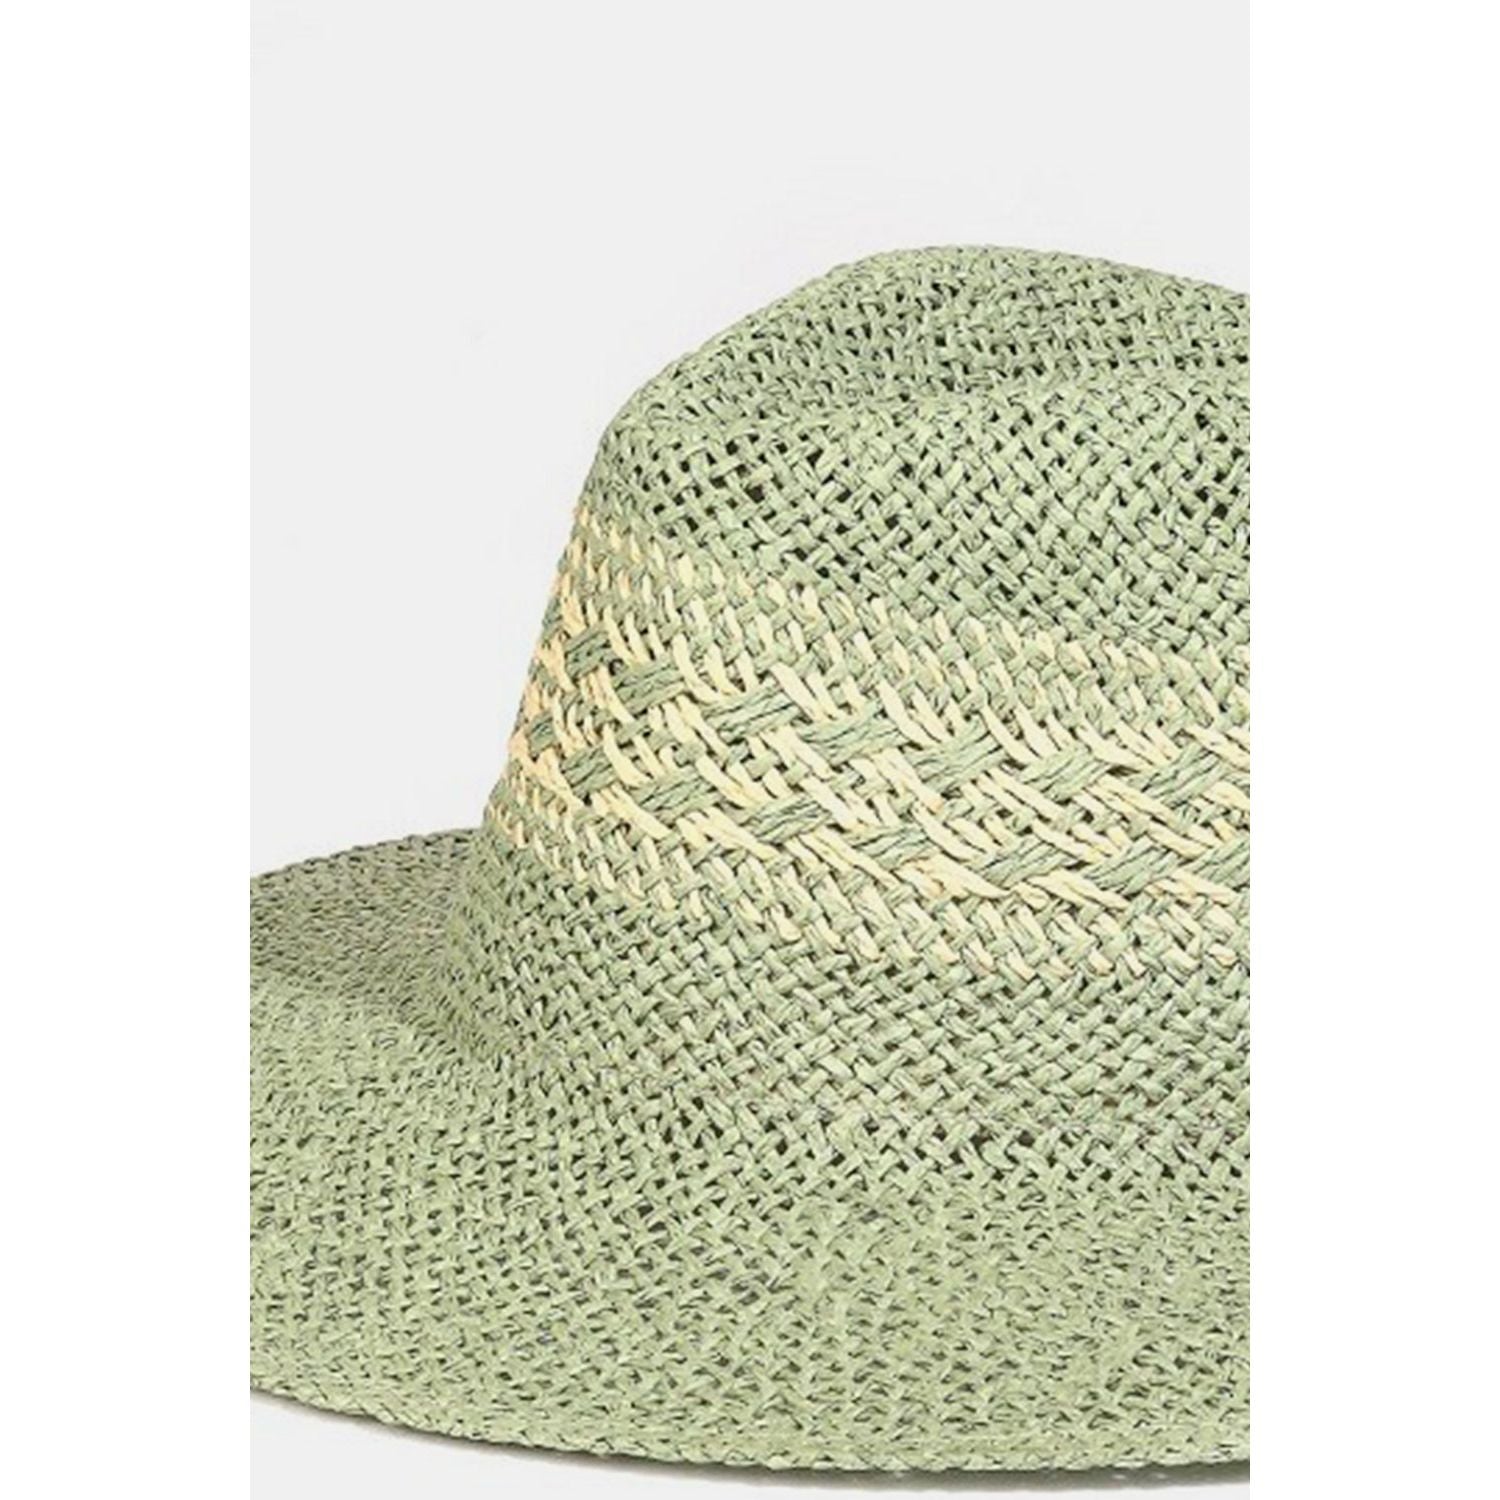 Fame Contrast Wide Brim Straw Hat - TiffanyzKlozet